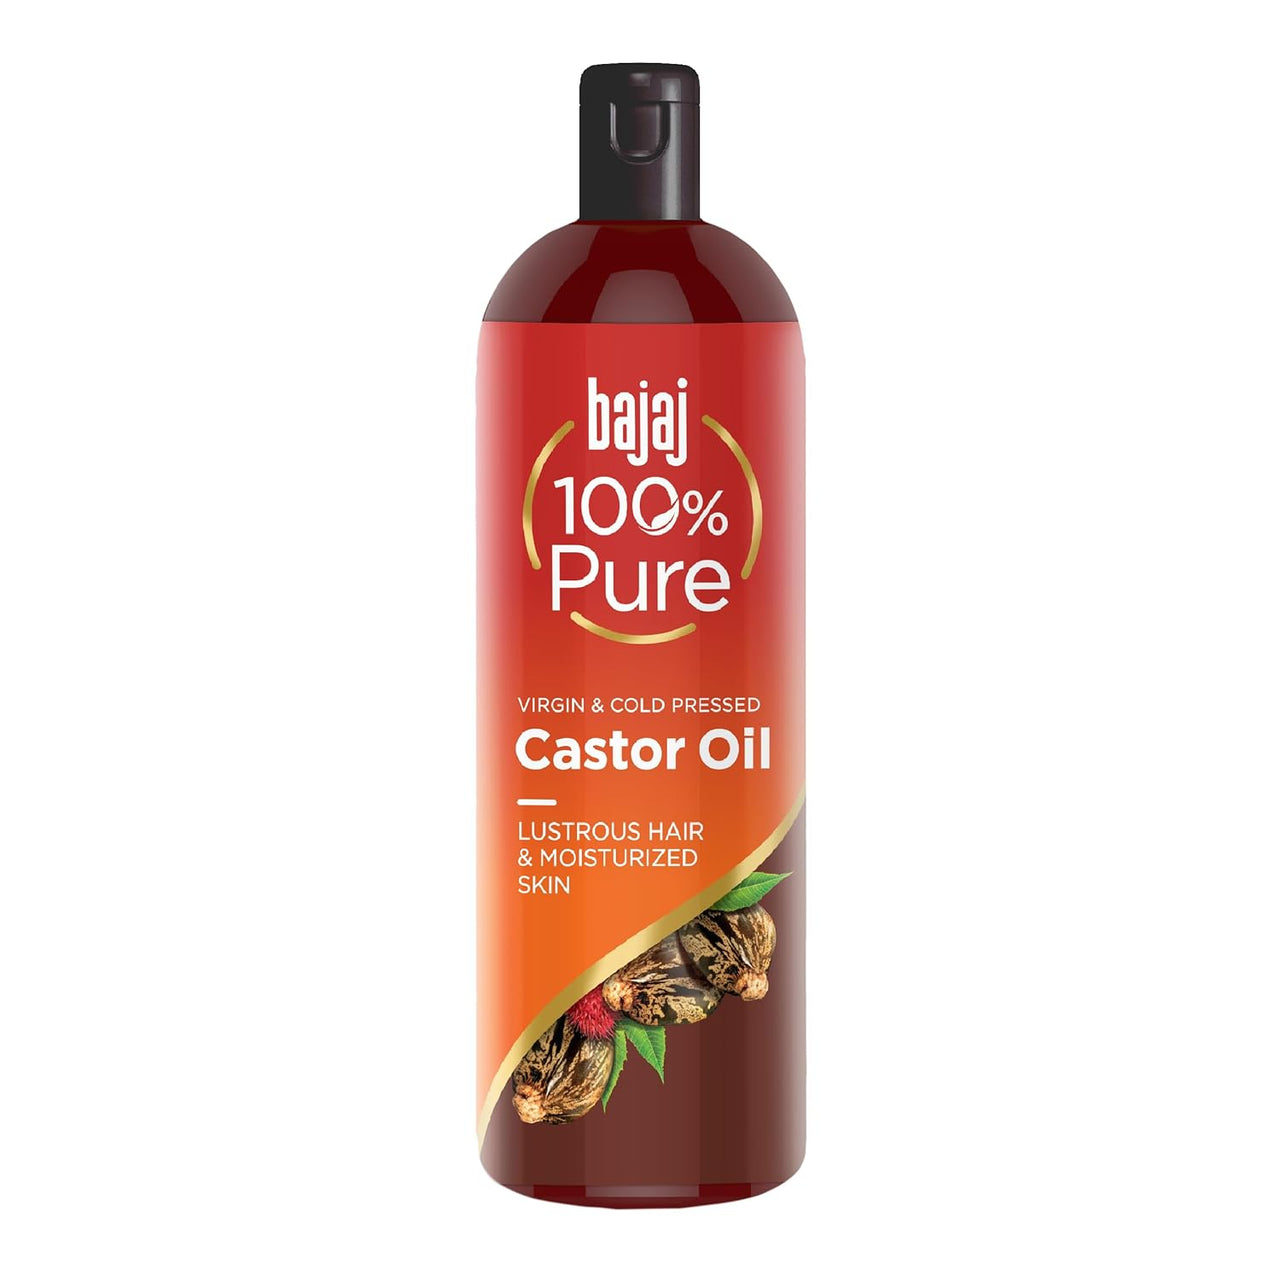 Bajaj 100% Pure Castor Oil - Distacart